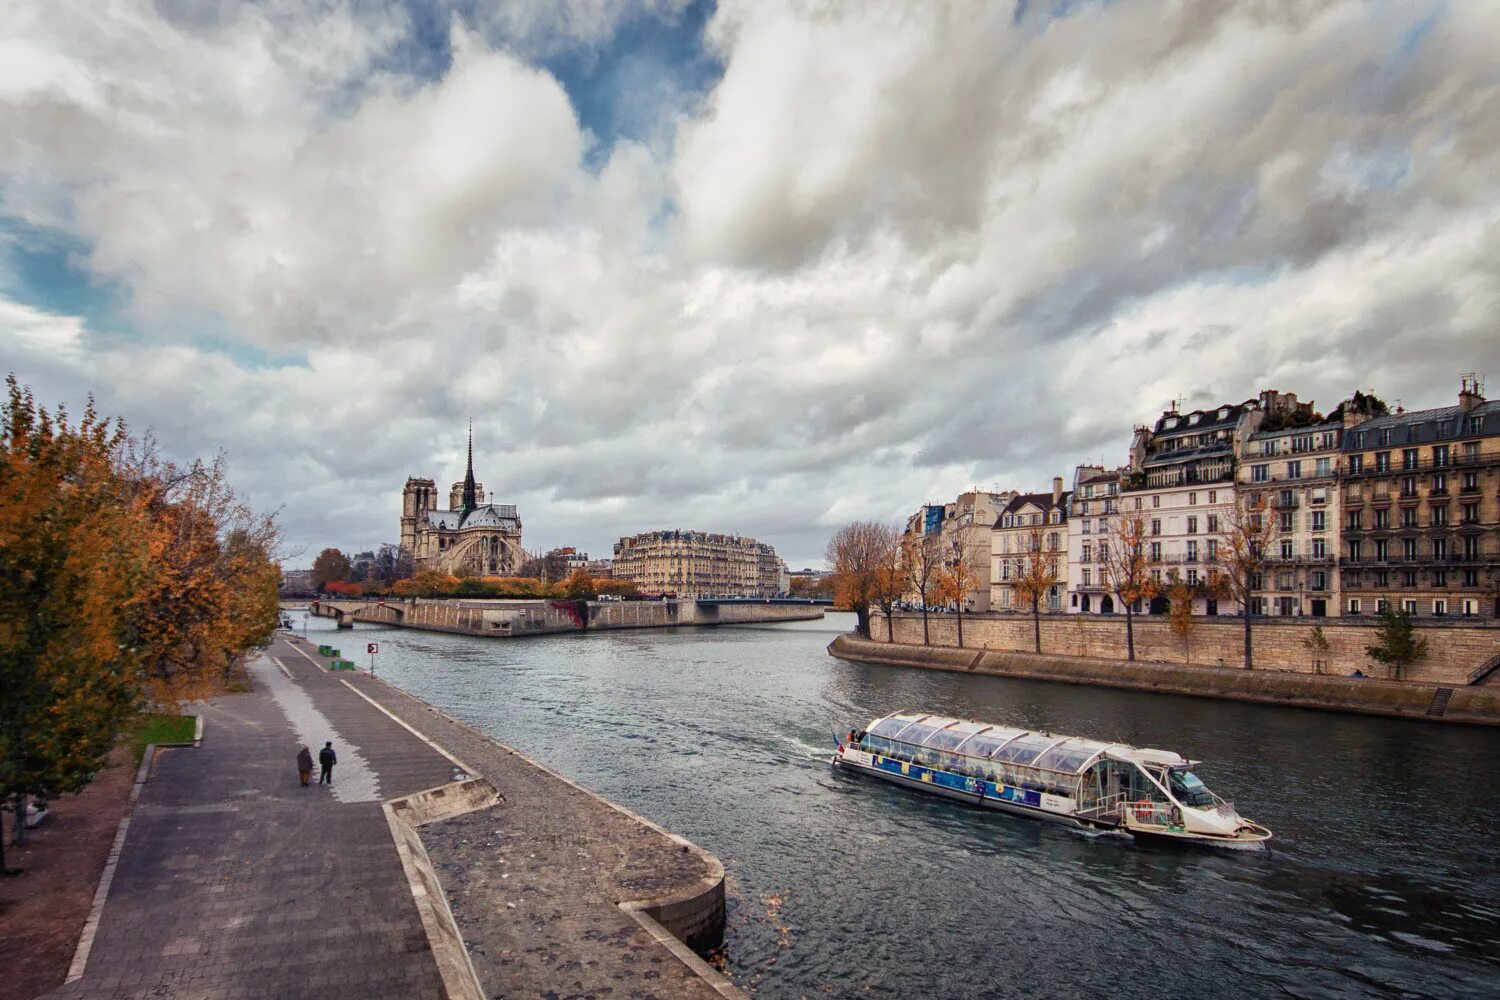 Какая река сена. La seine река. La seine в Париж. Река сена во Франции. Река сена в Париже.